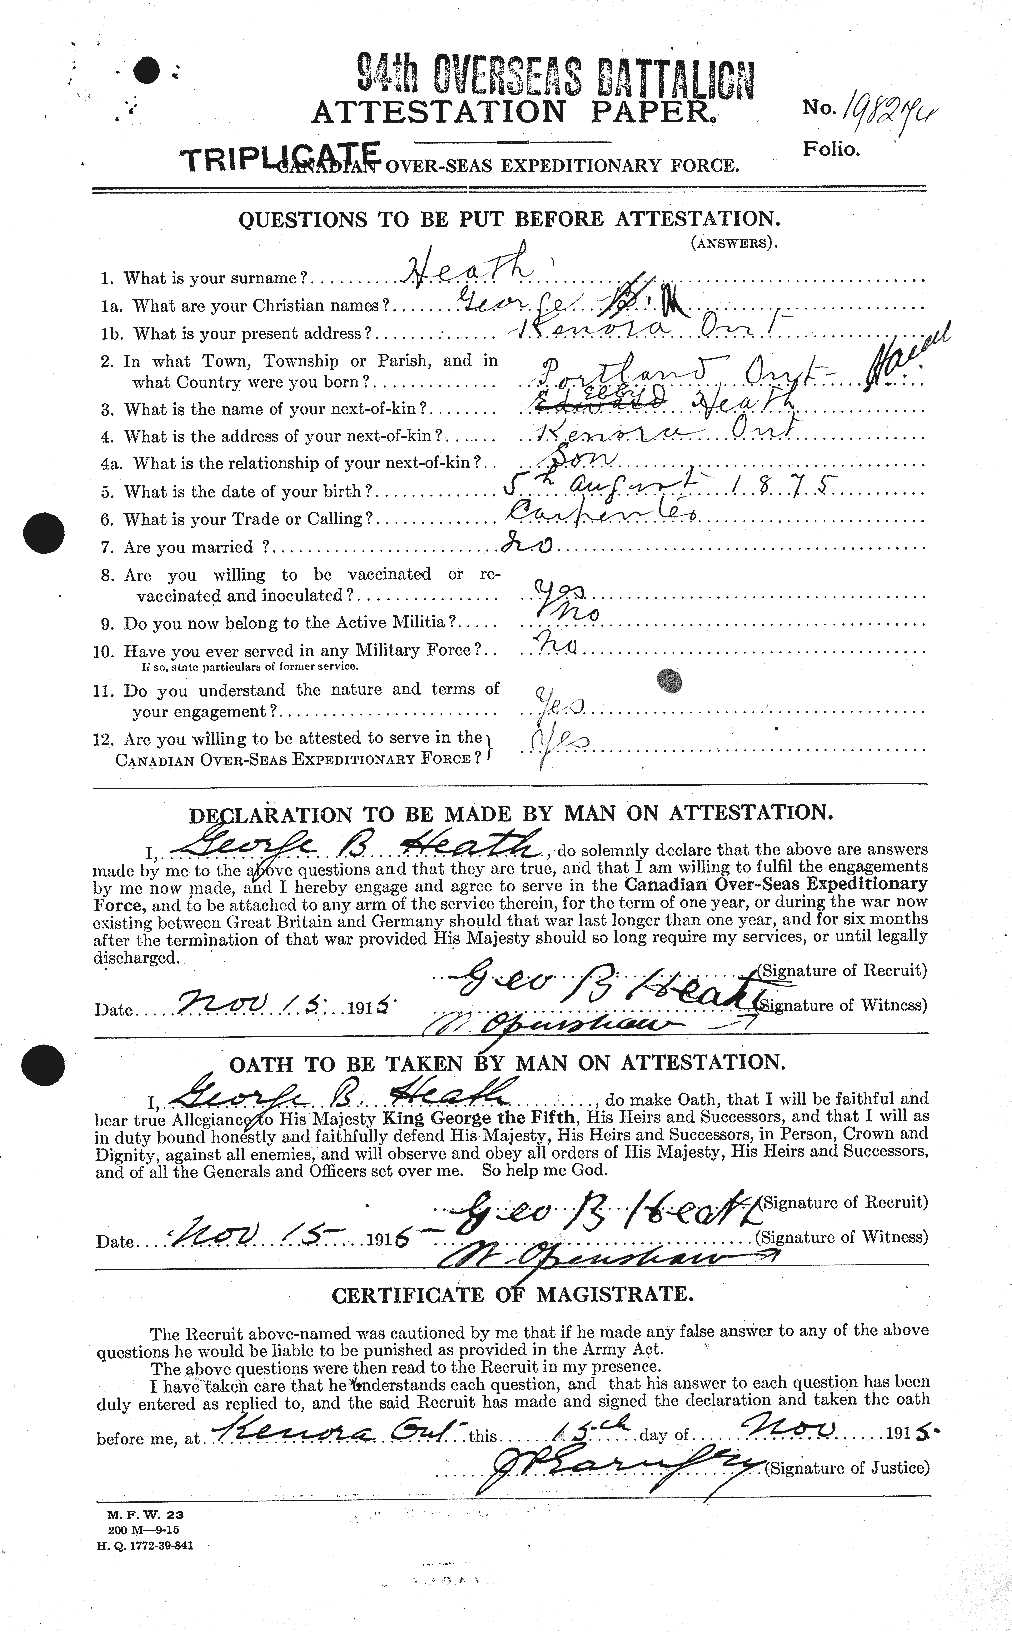 Dossiers du Personnel de la Première Guerre mondiale - CEC 386251a